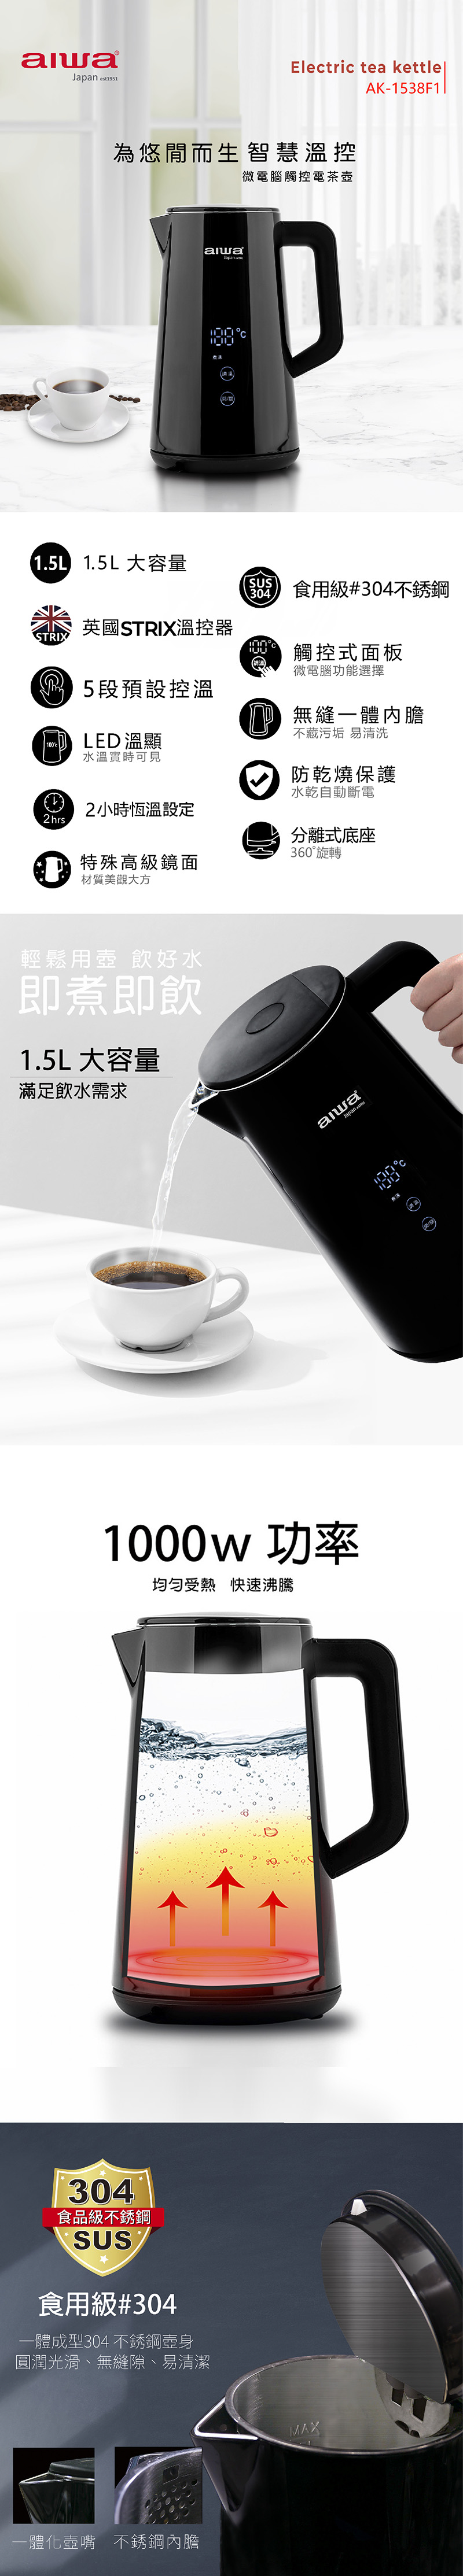 【aiwa愛華 】微電腦觸控式溫控電茶壺 AK-1538F1